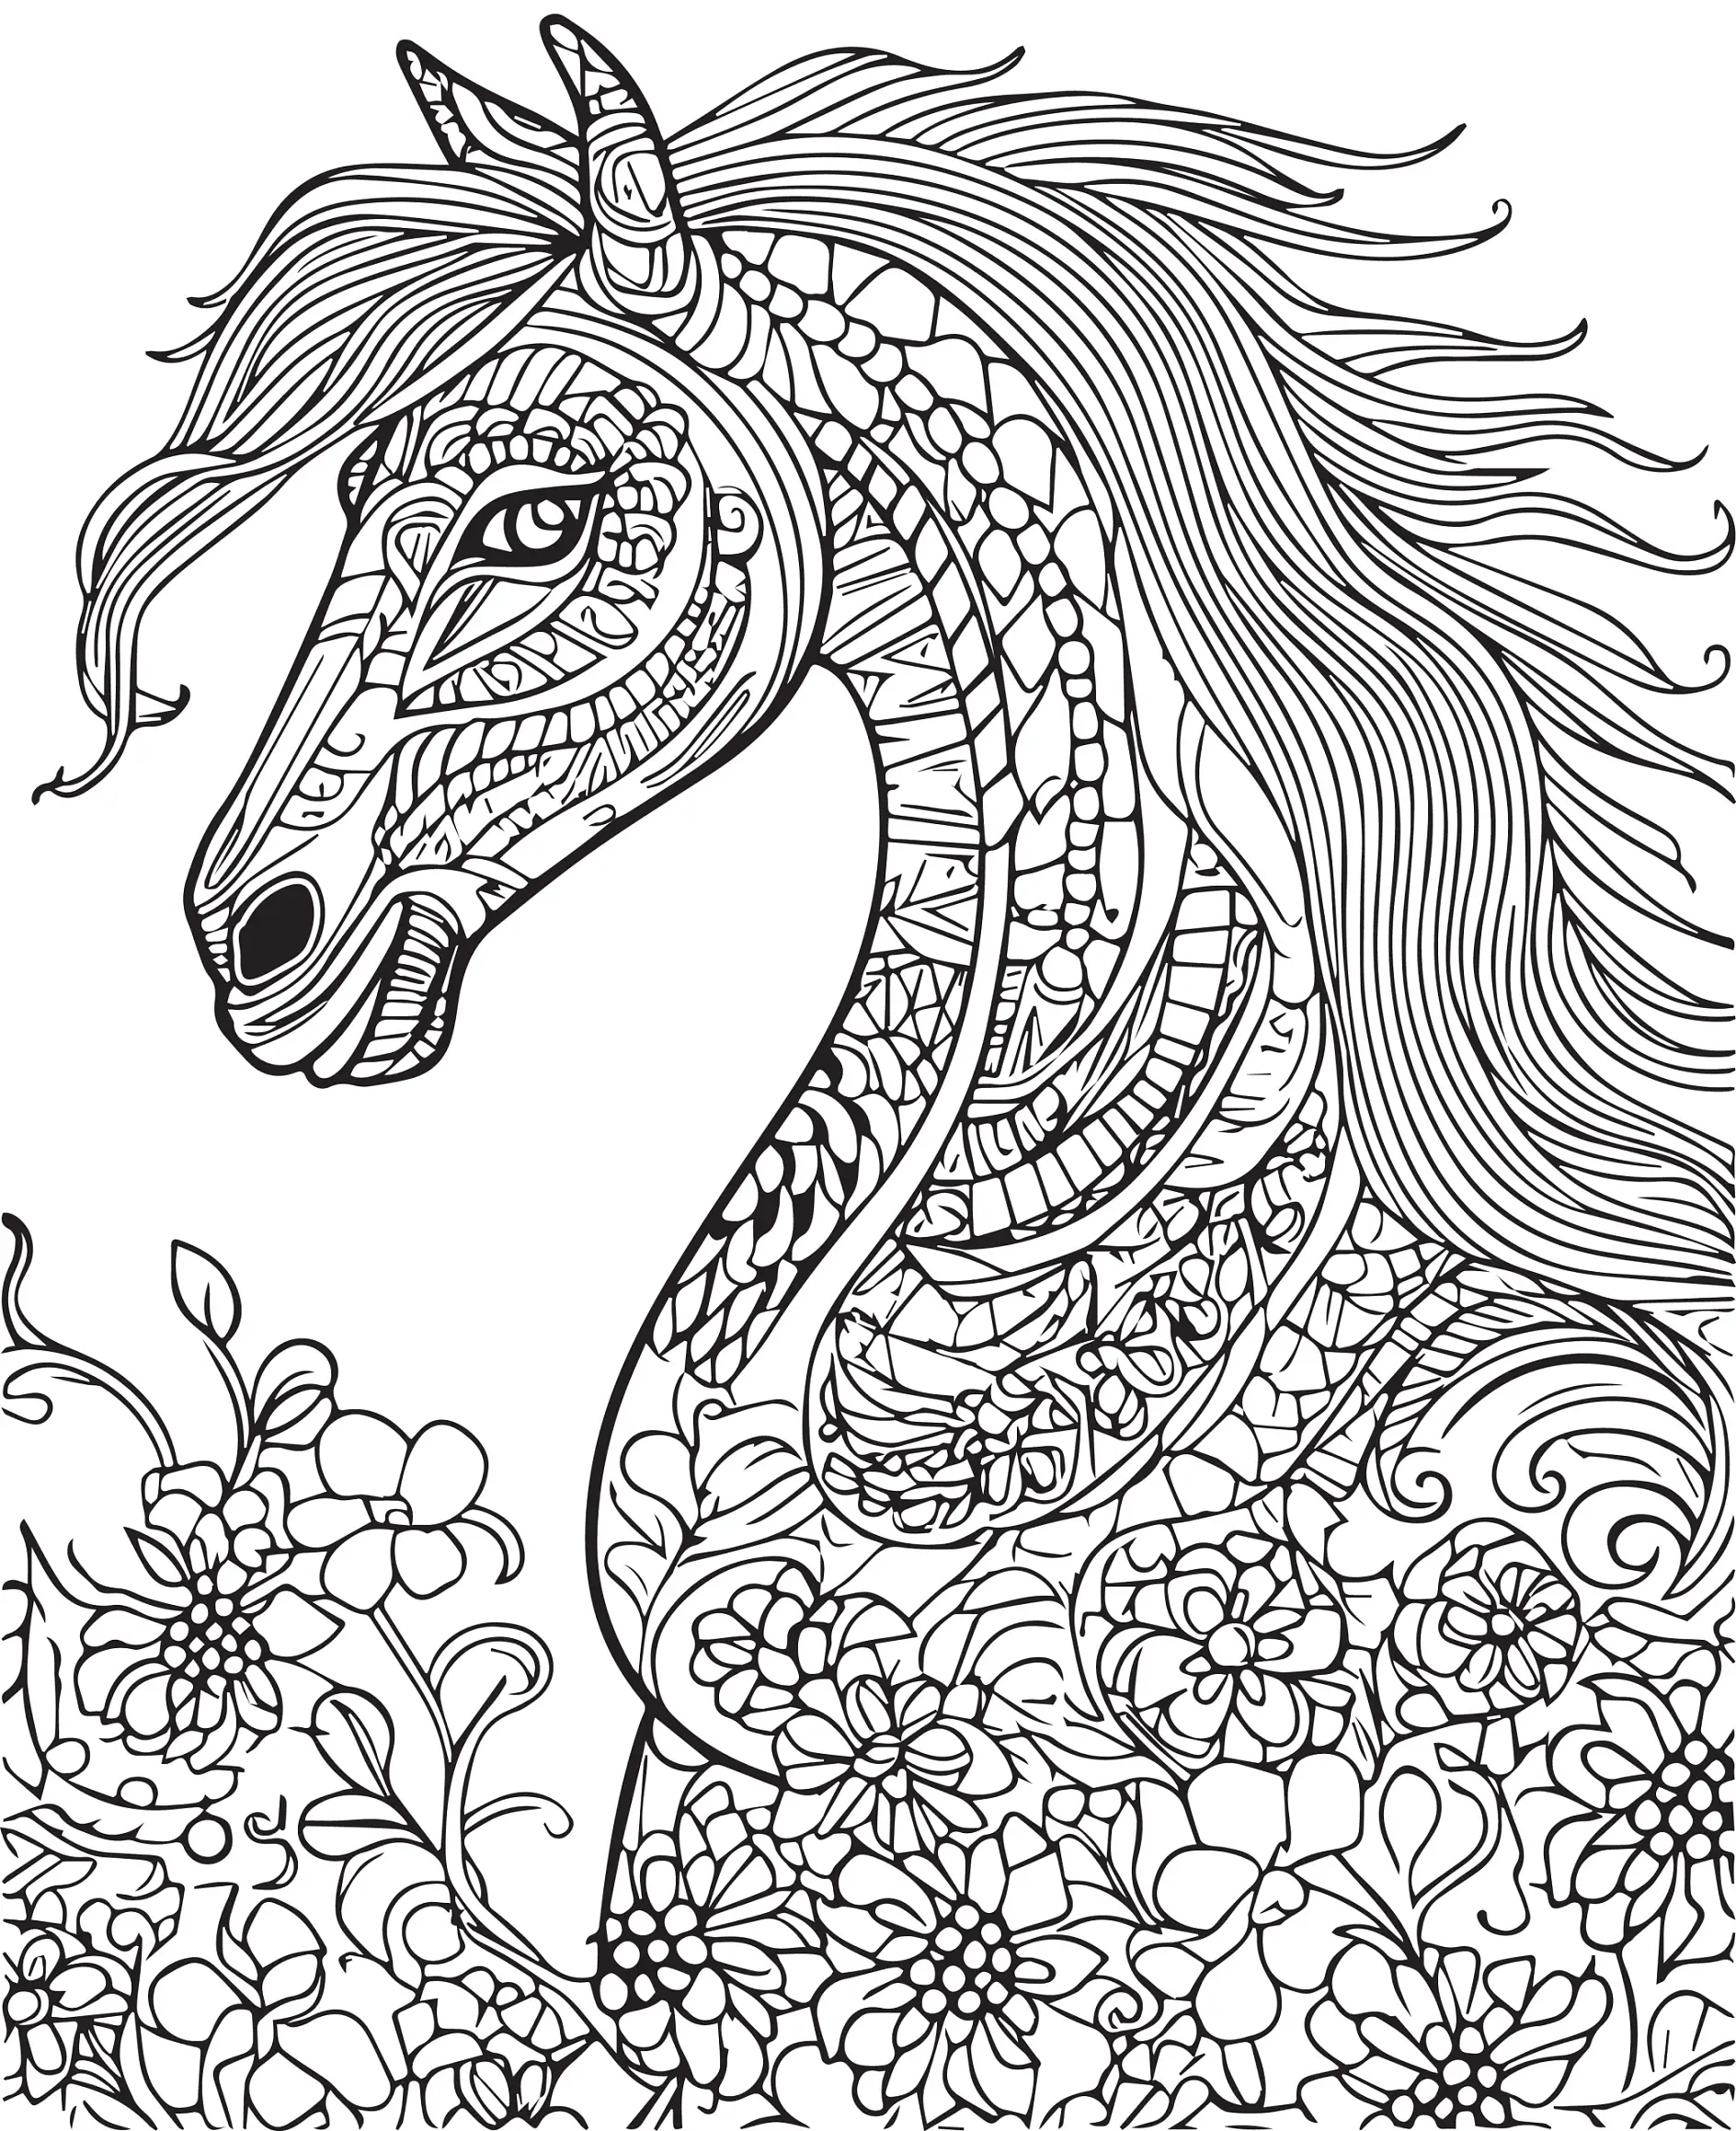 Ausmalbild Mandala Pferd und floralen Mustern